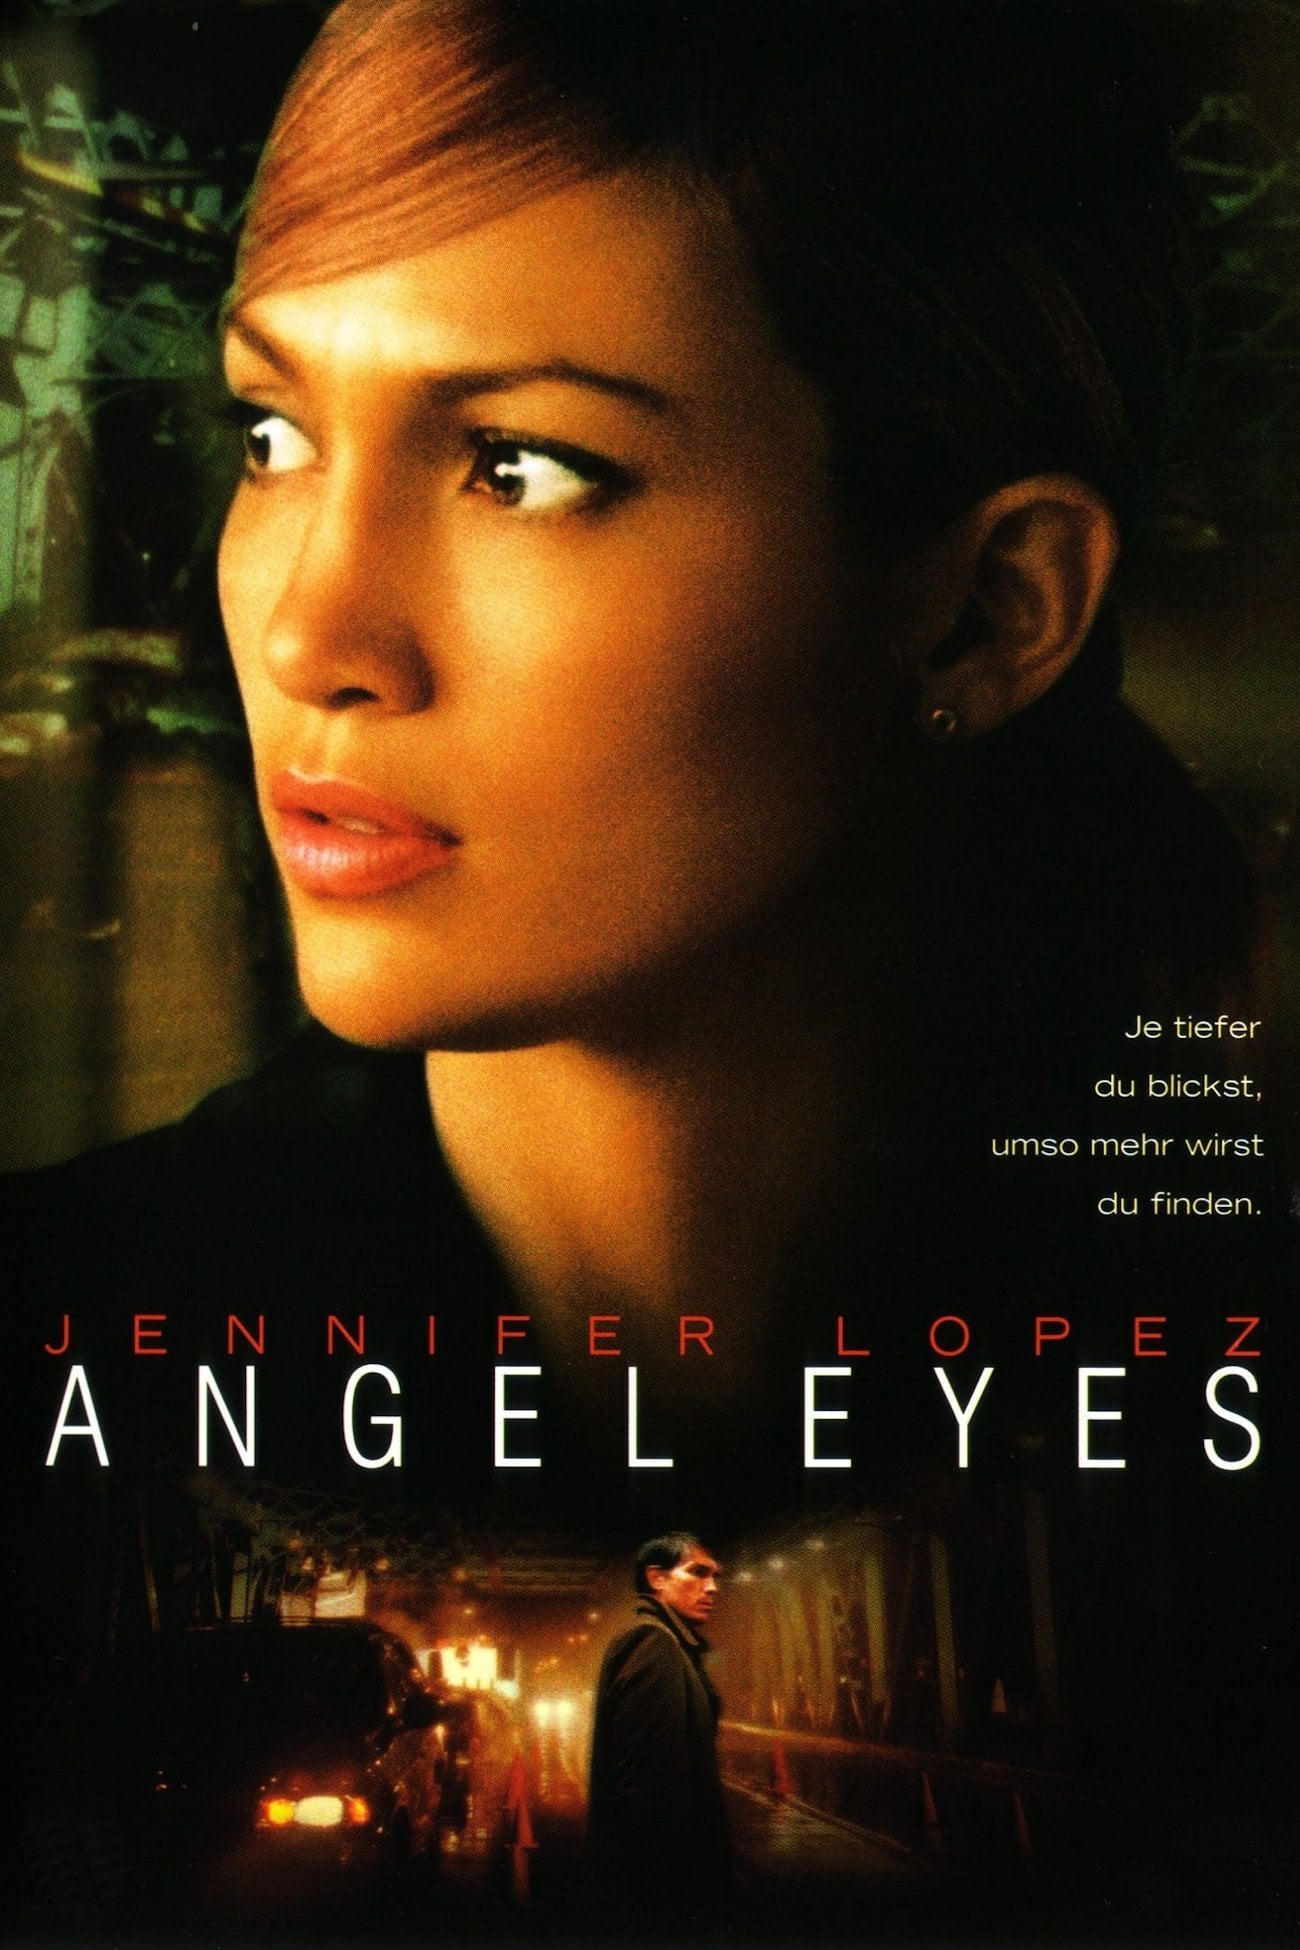 Plakat von "Angel Eyes"